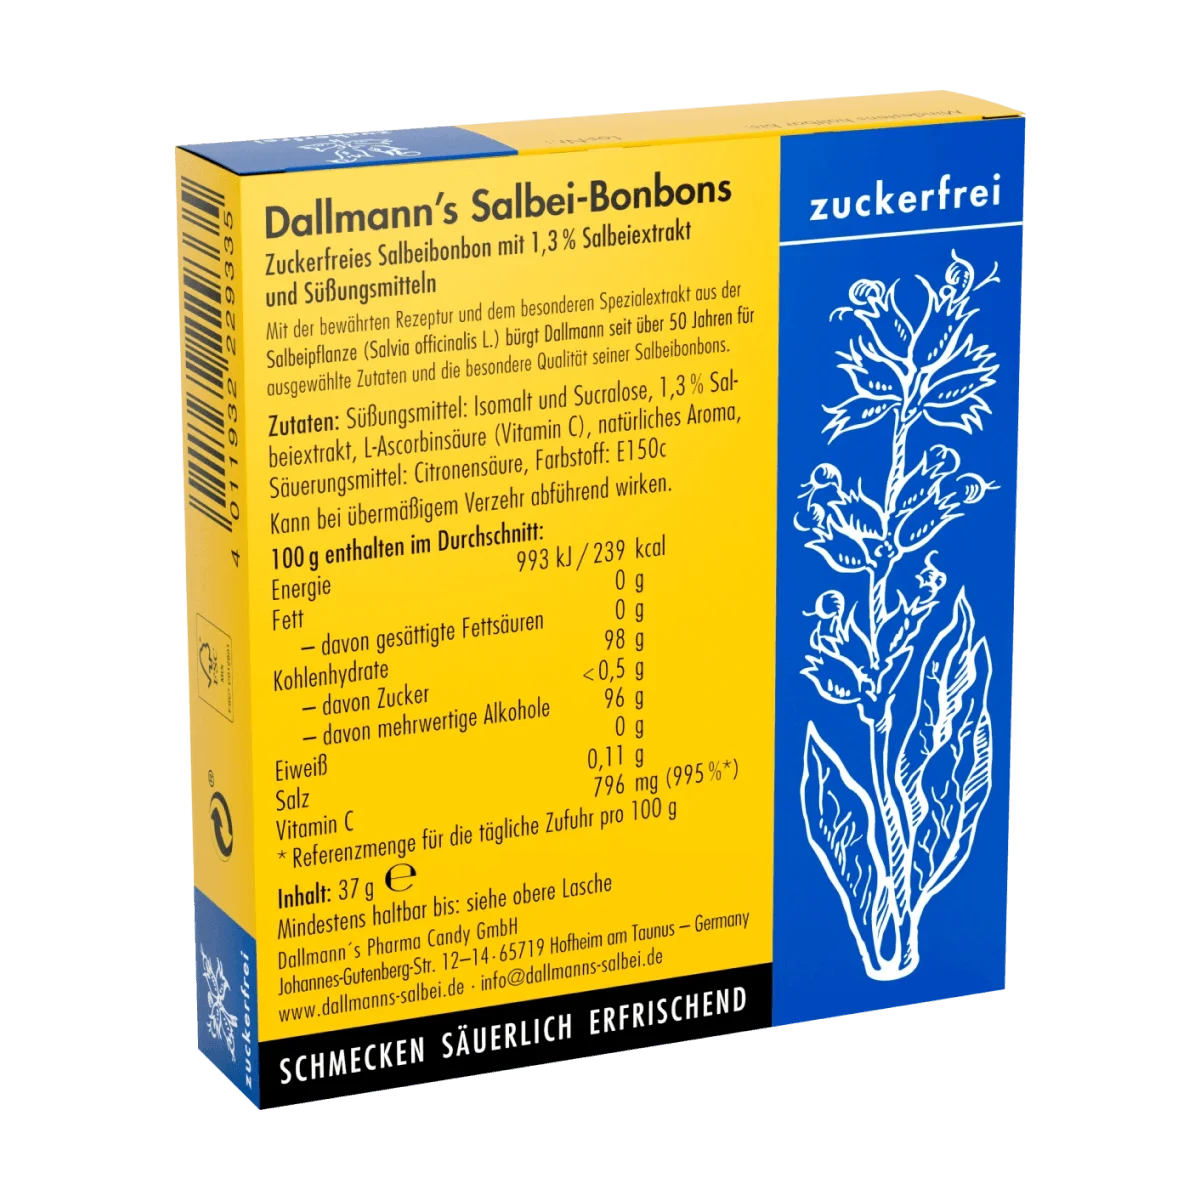 Dallmann's Salbei-Bonbons zuckerfreie Hals- und Hustenbonbons (20 Stück), 37 g